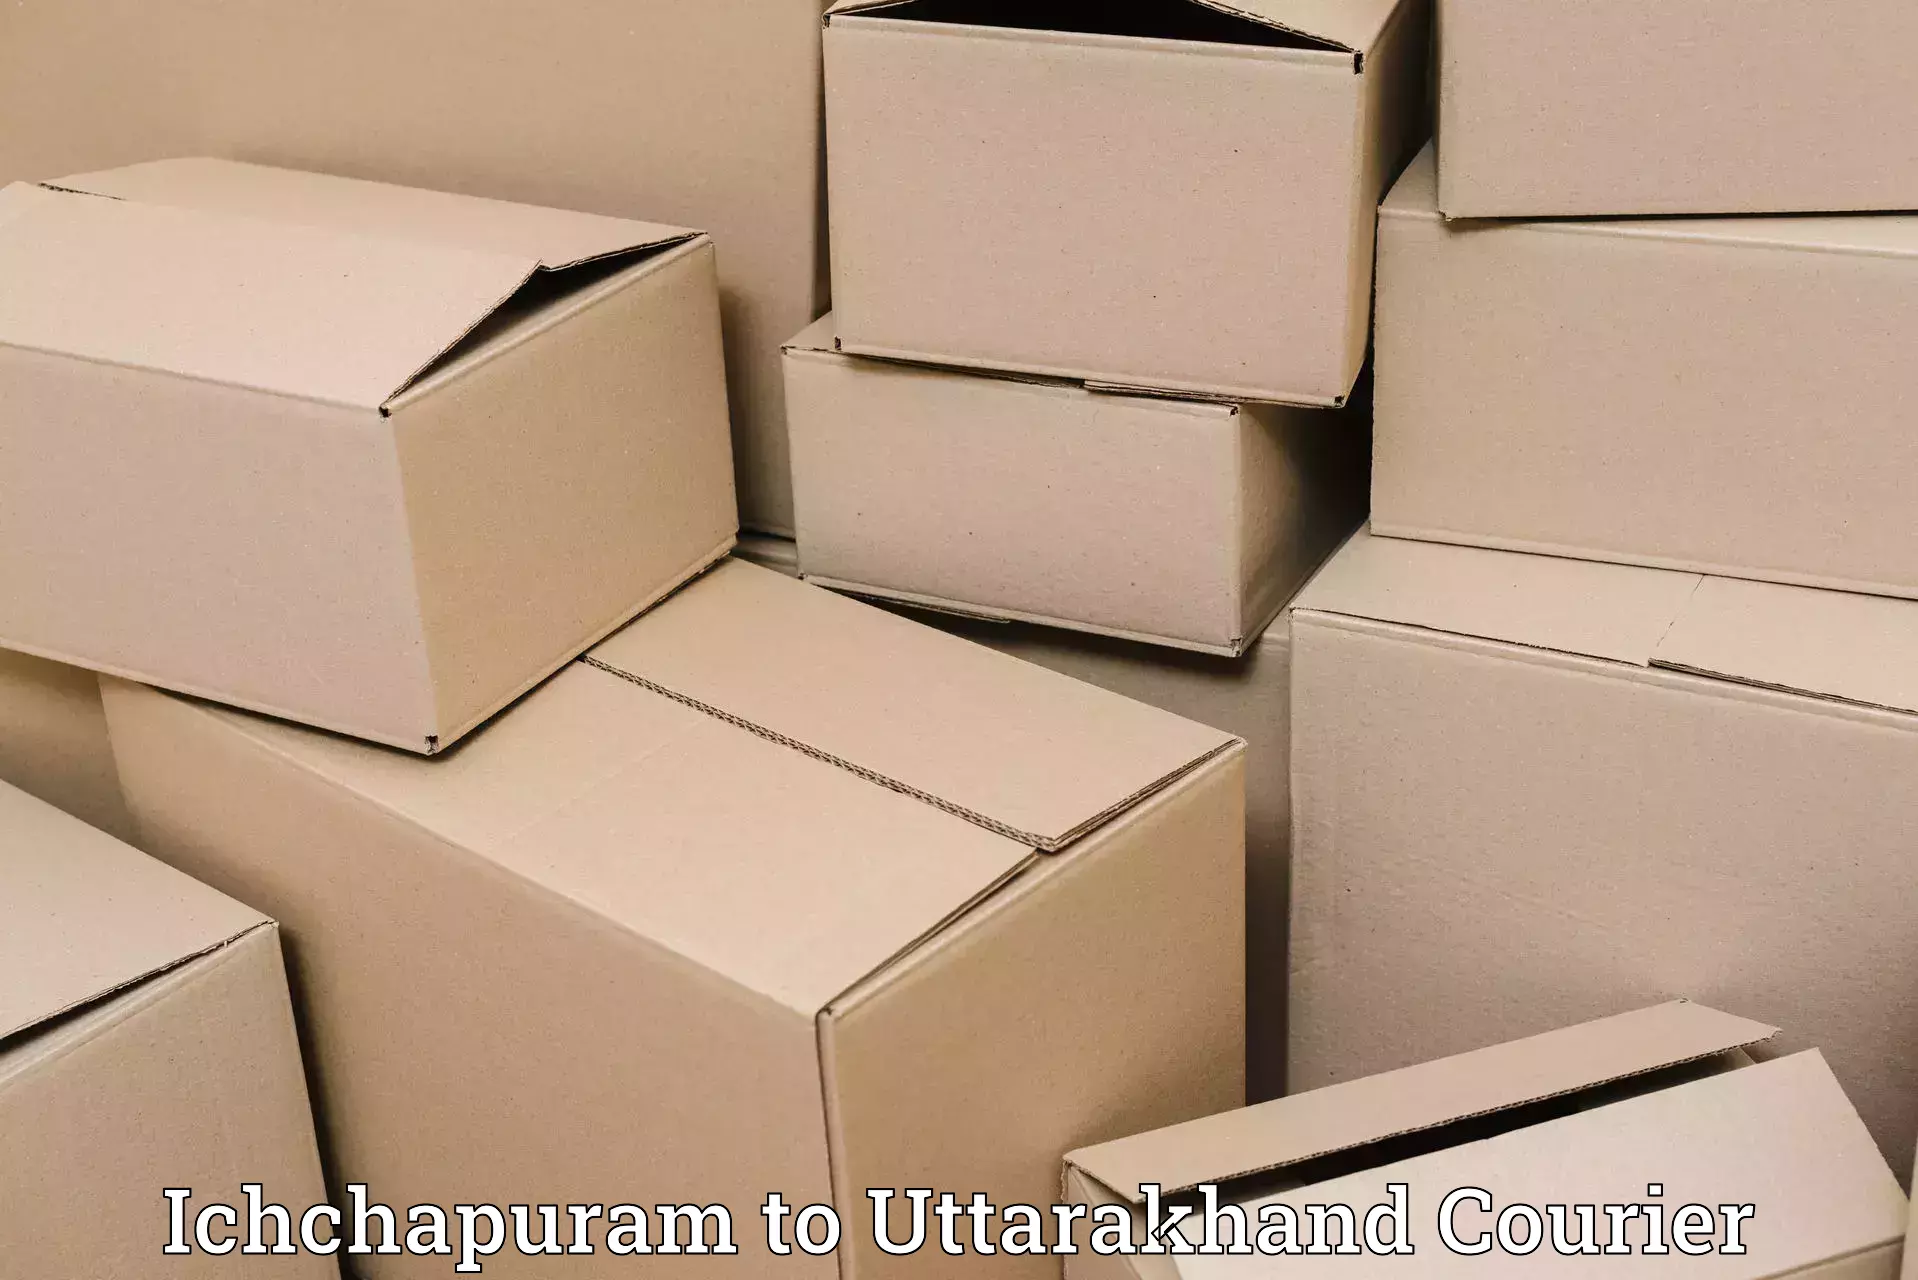 Professional courier services in Ichchapuram to Rudraprayag